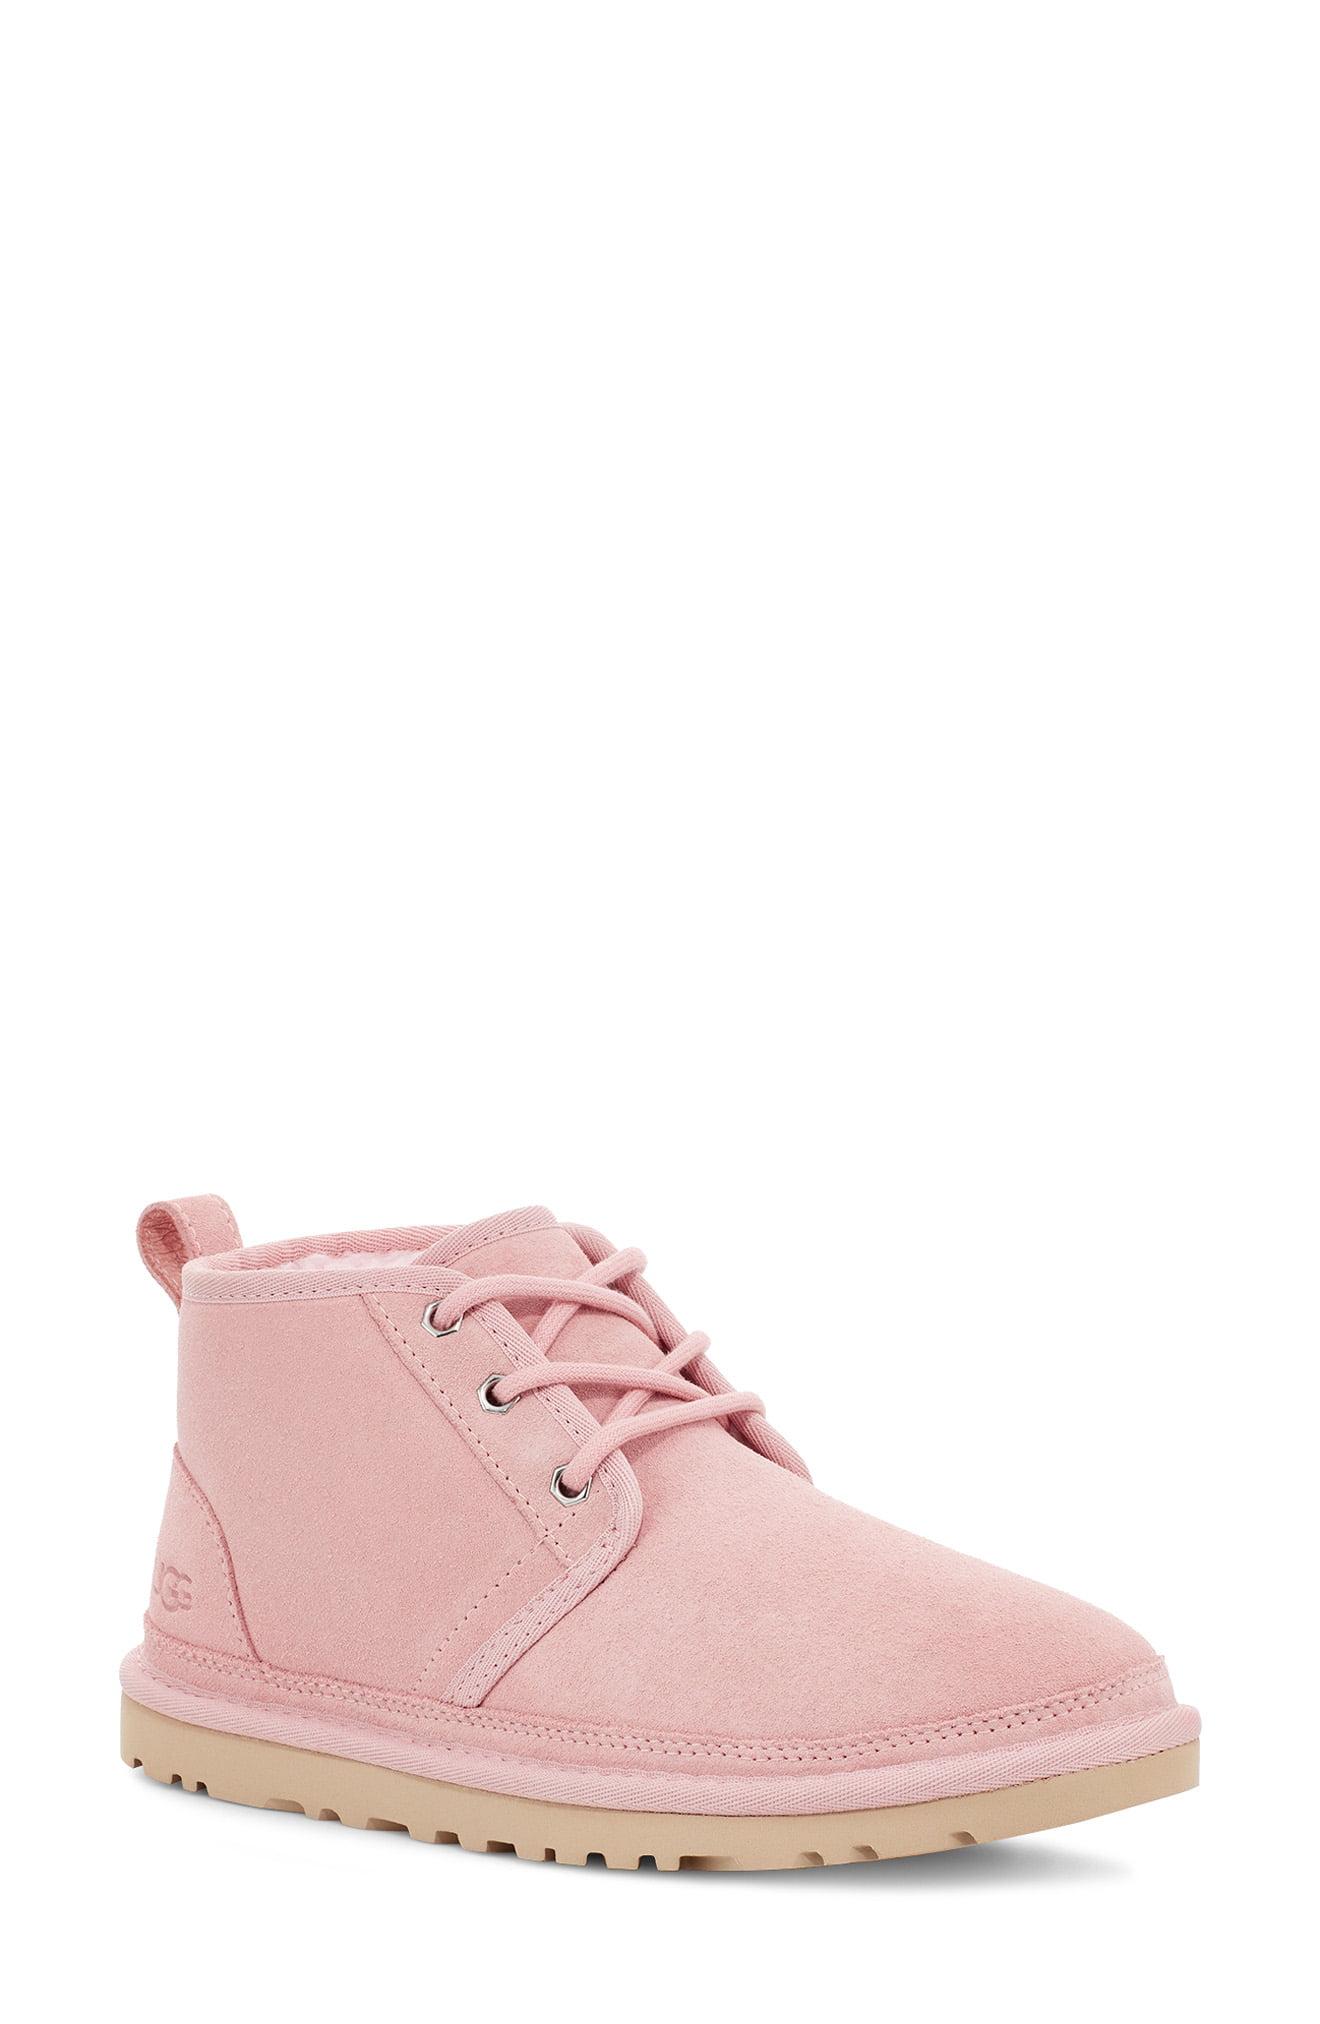 pink ugg neumel boots